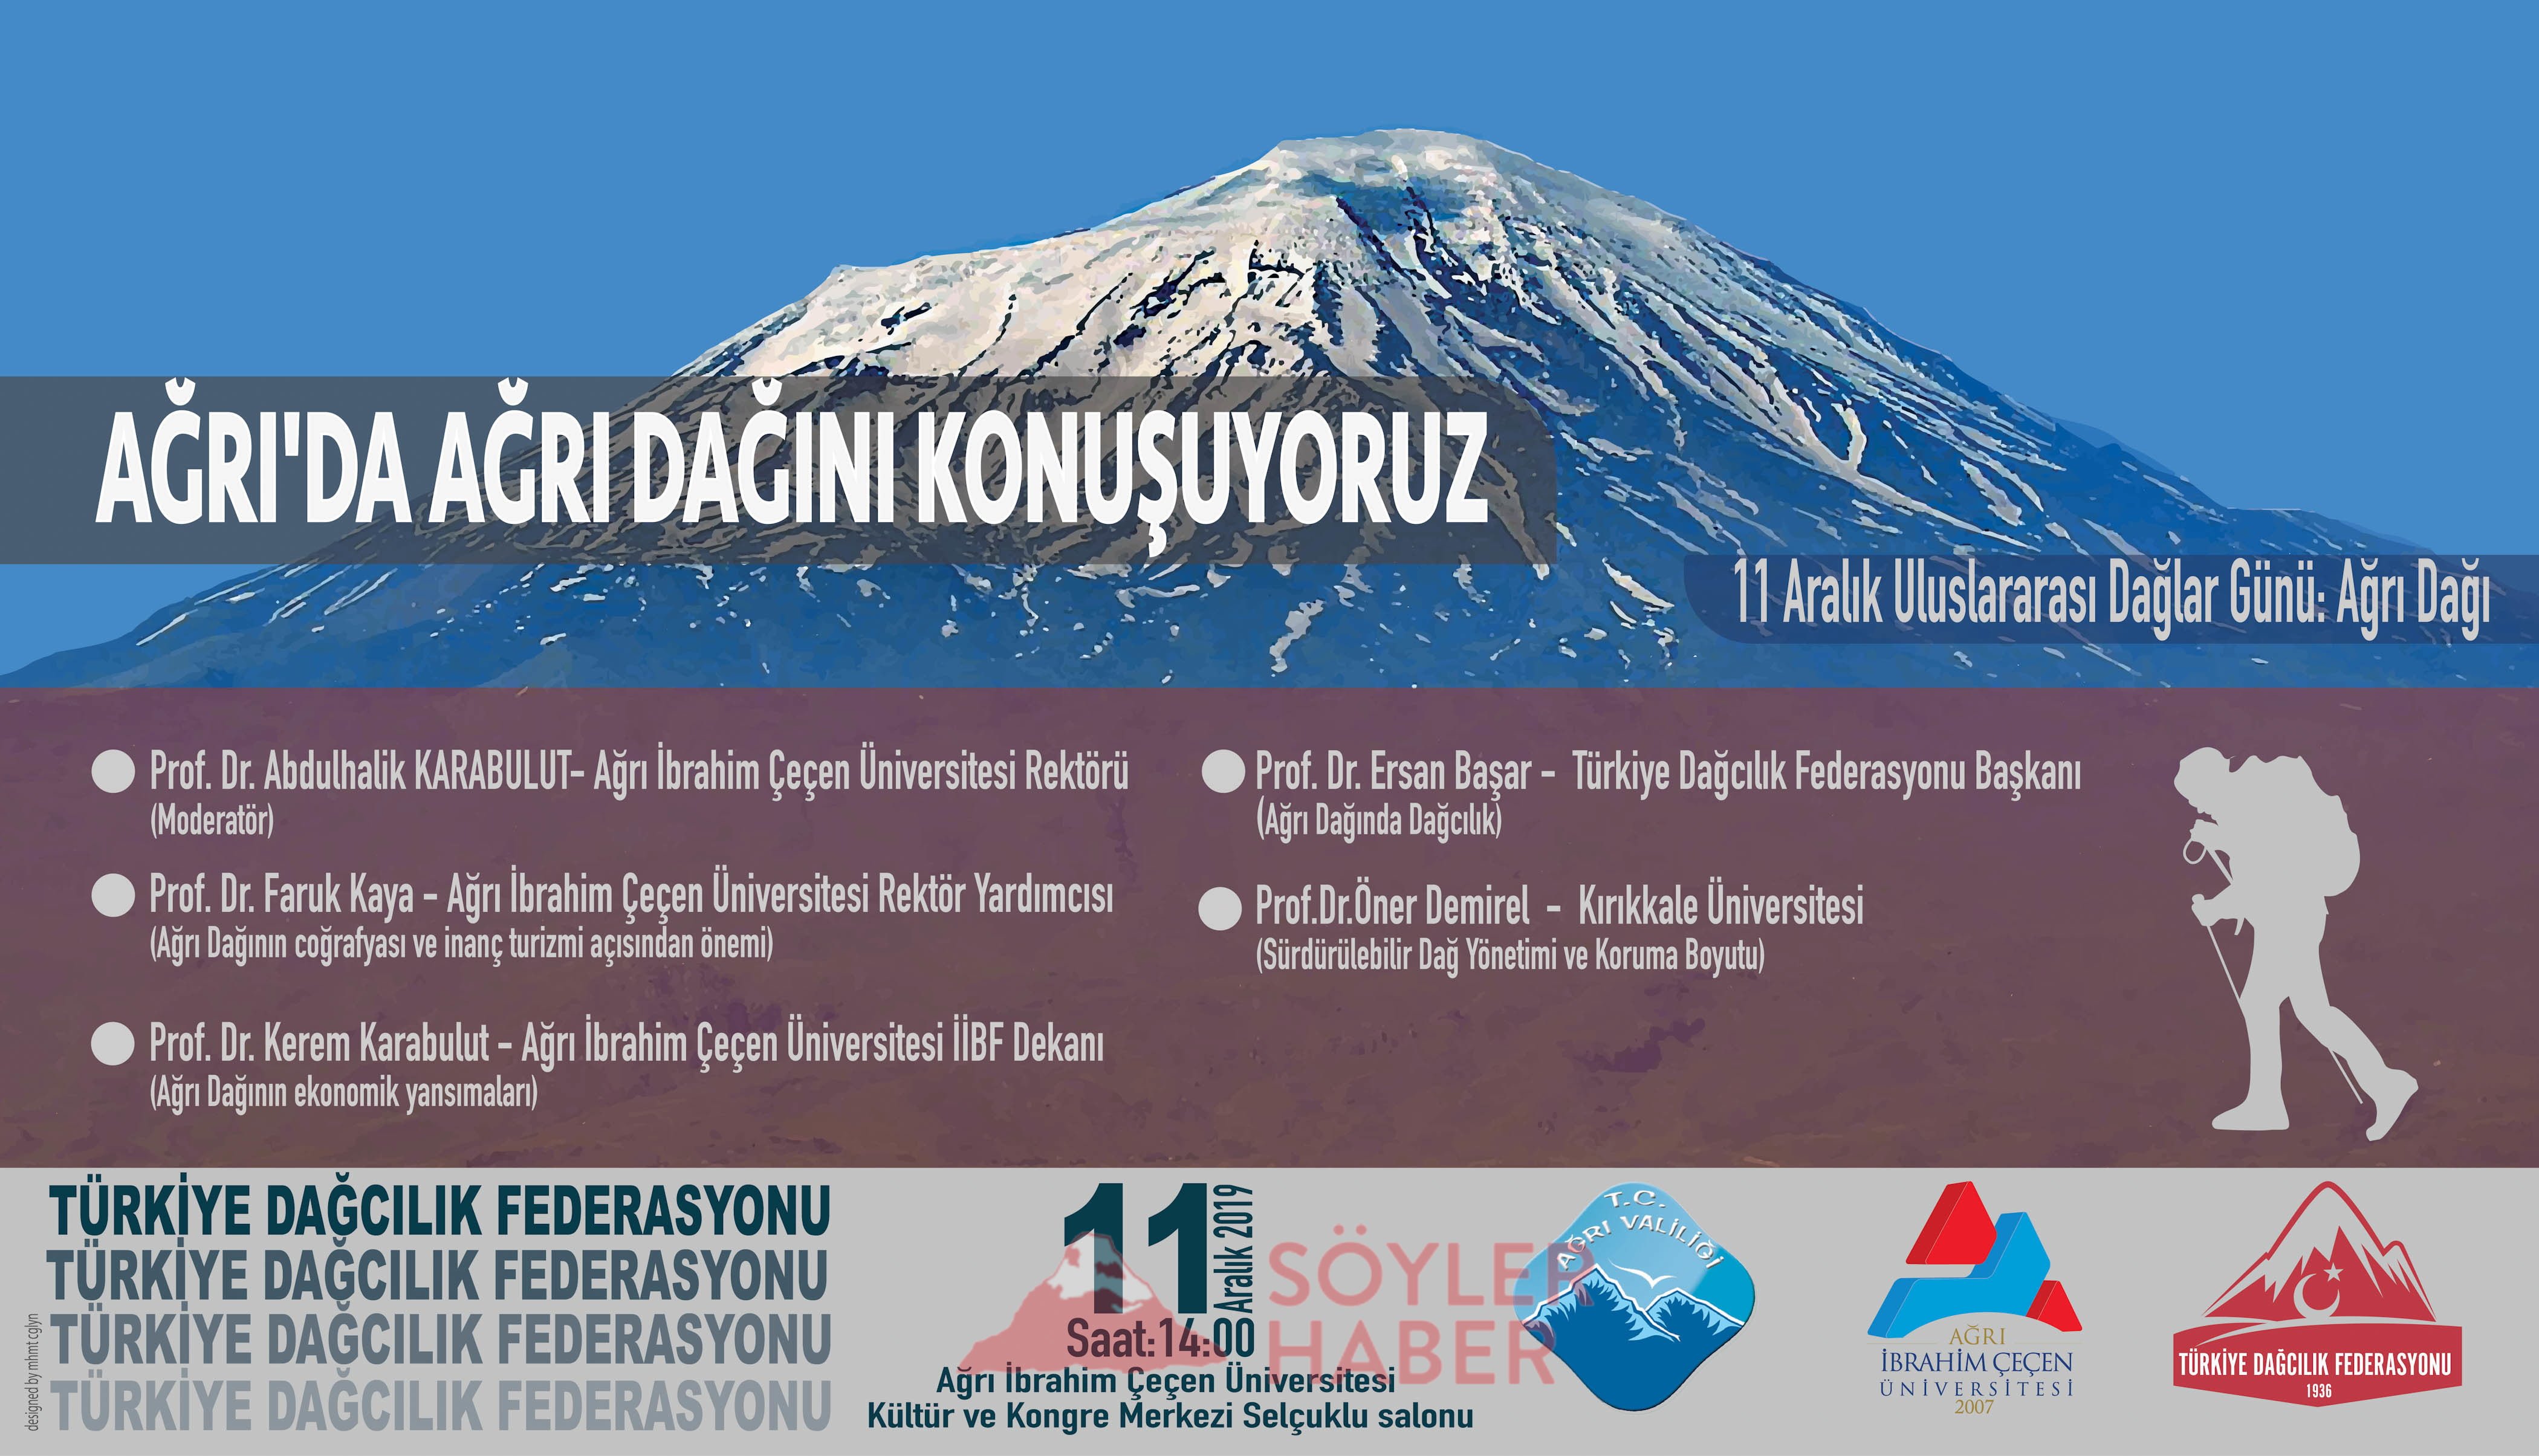 Uluslararası Dağlar Gününde Ağrı'da Ağrı Dağı Paneli Düzenliyoruz